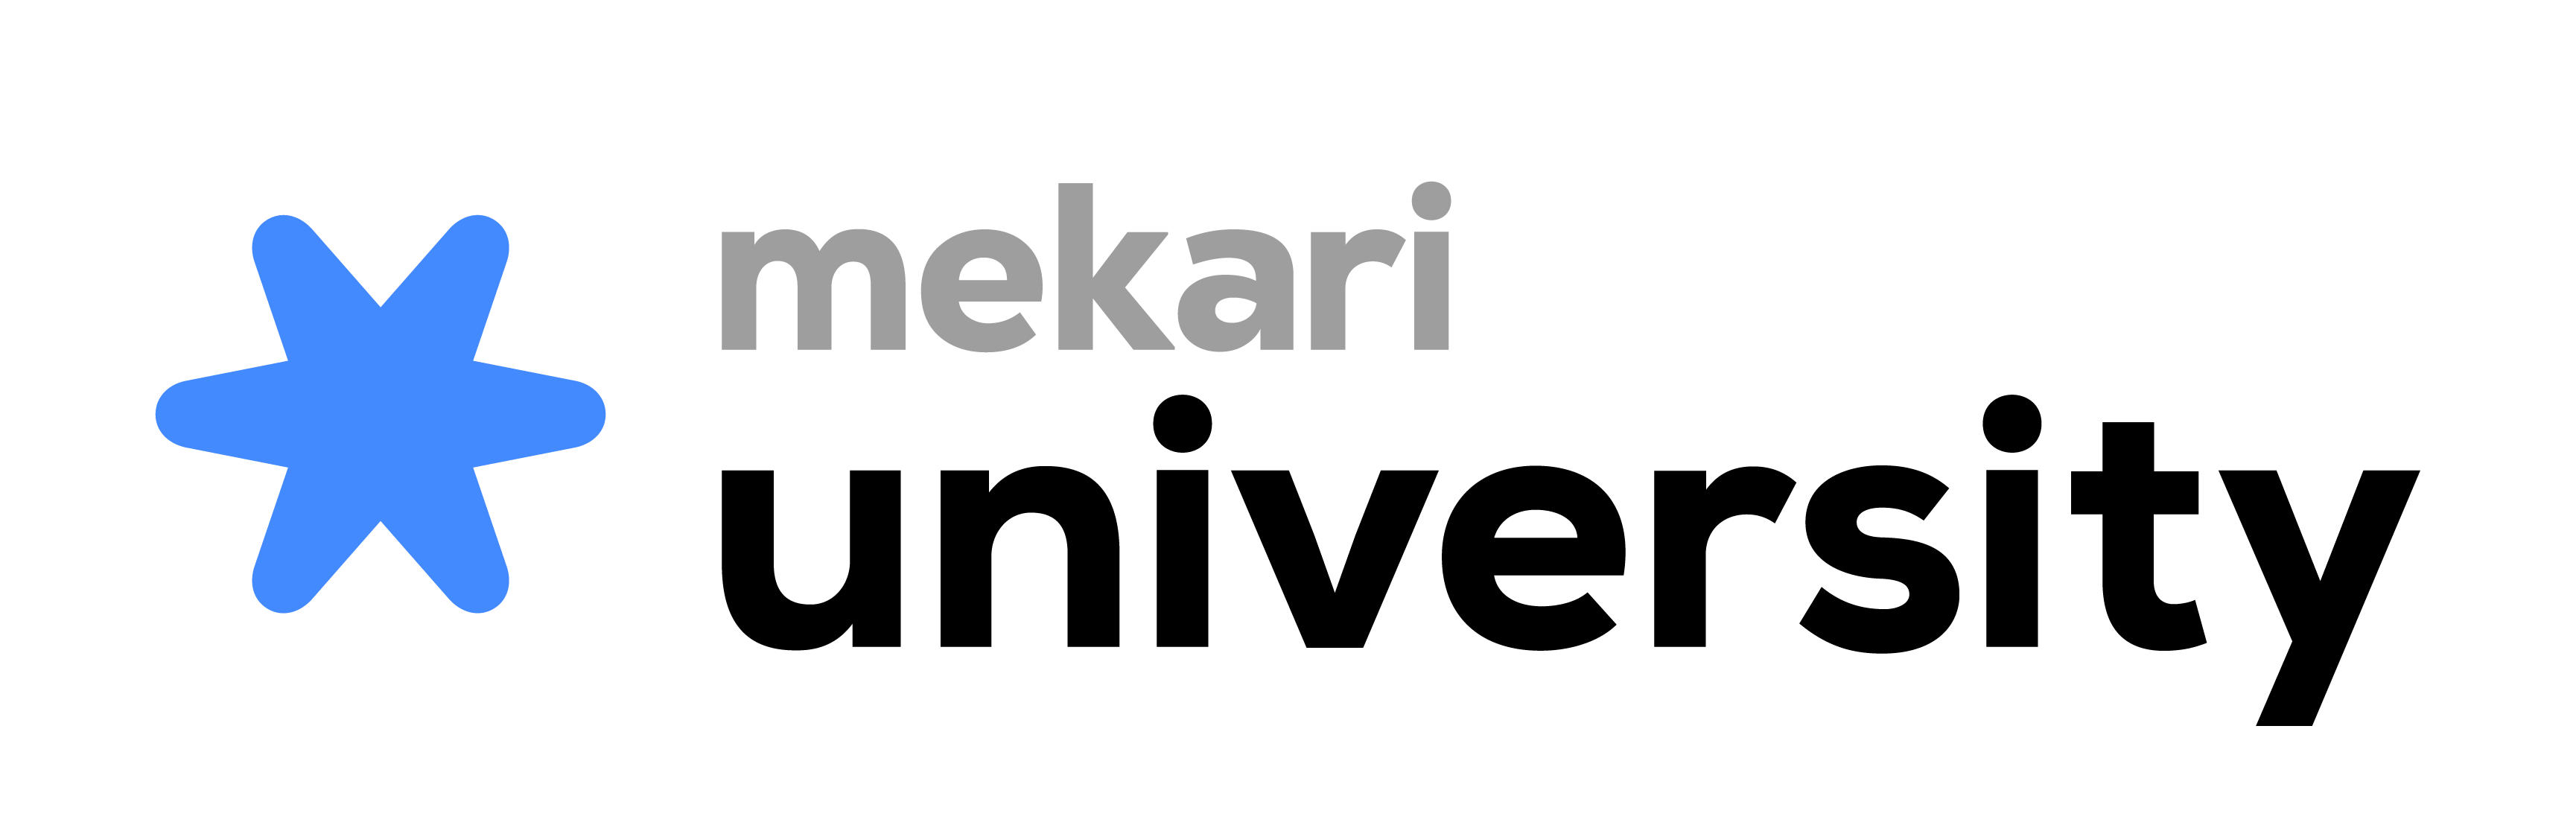 mekari-university